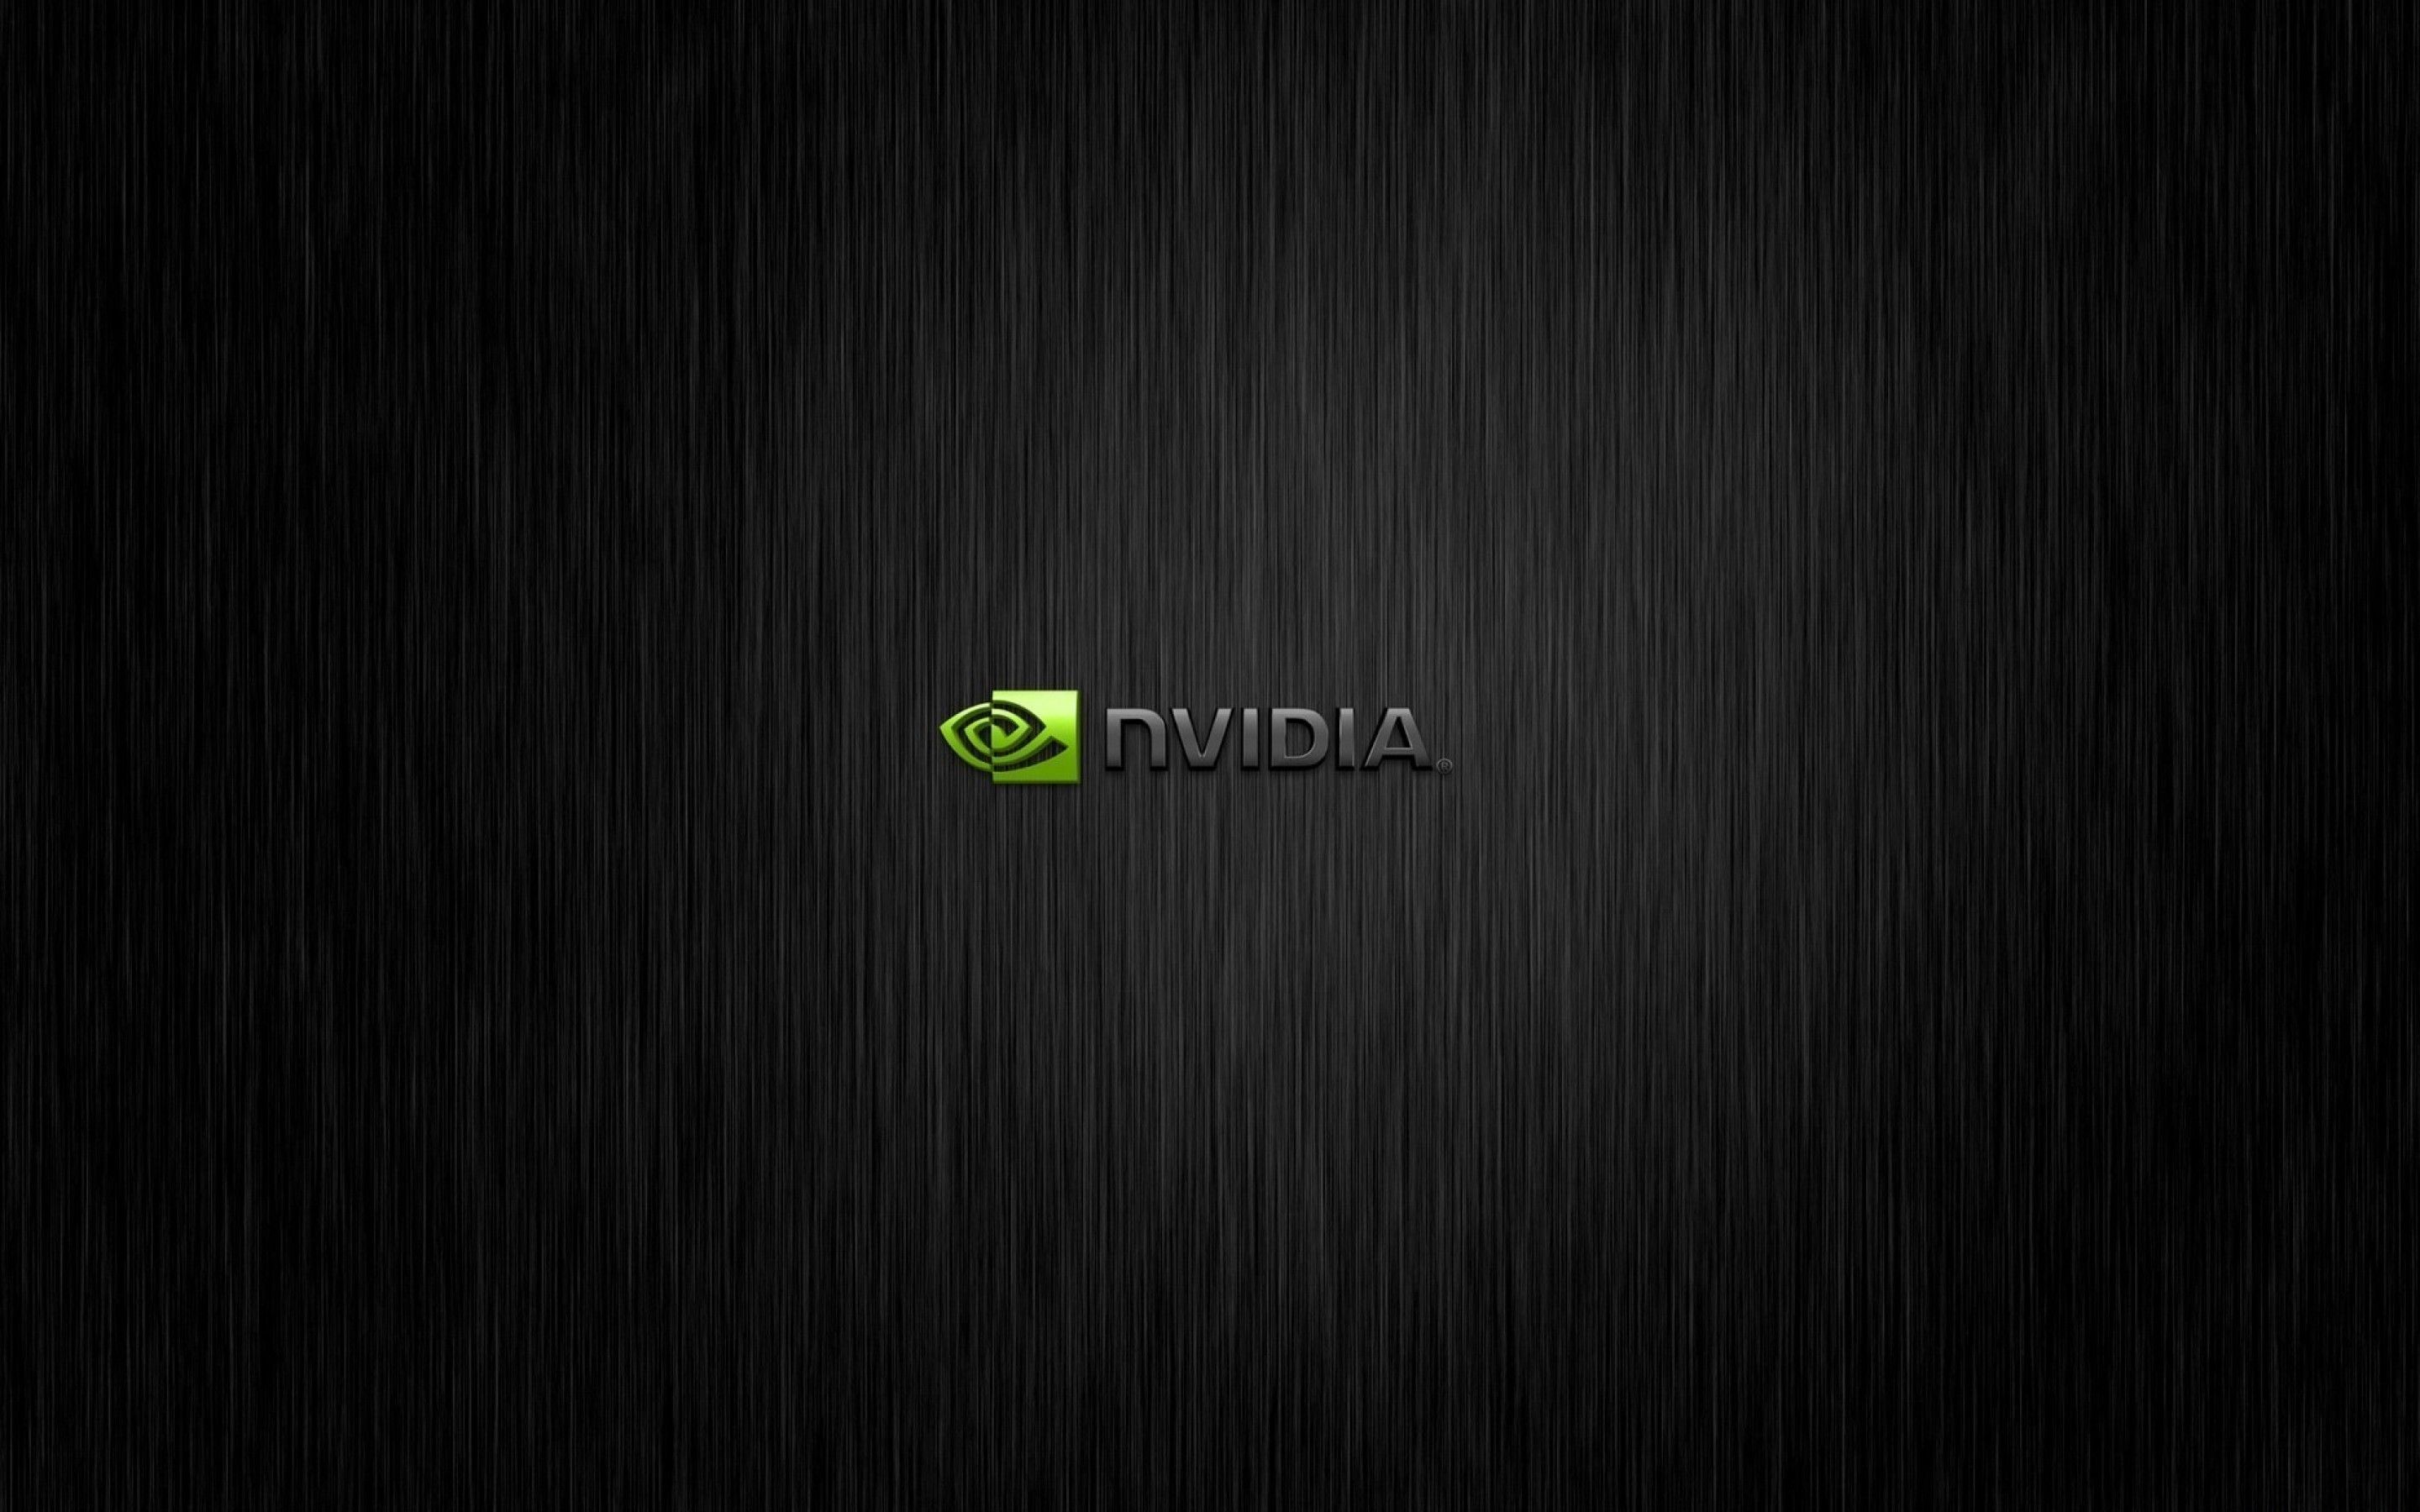 Nvidia wallpaper hd